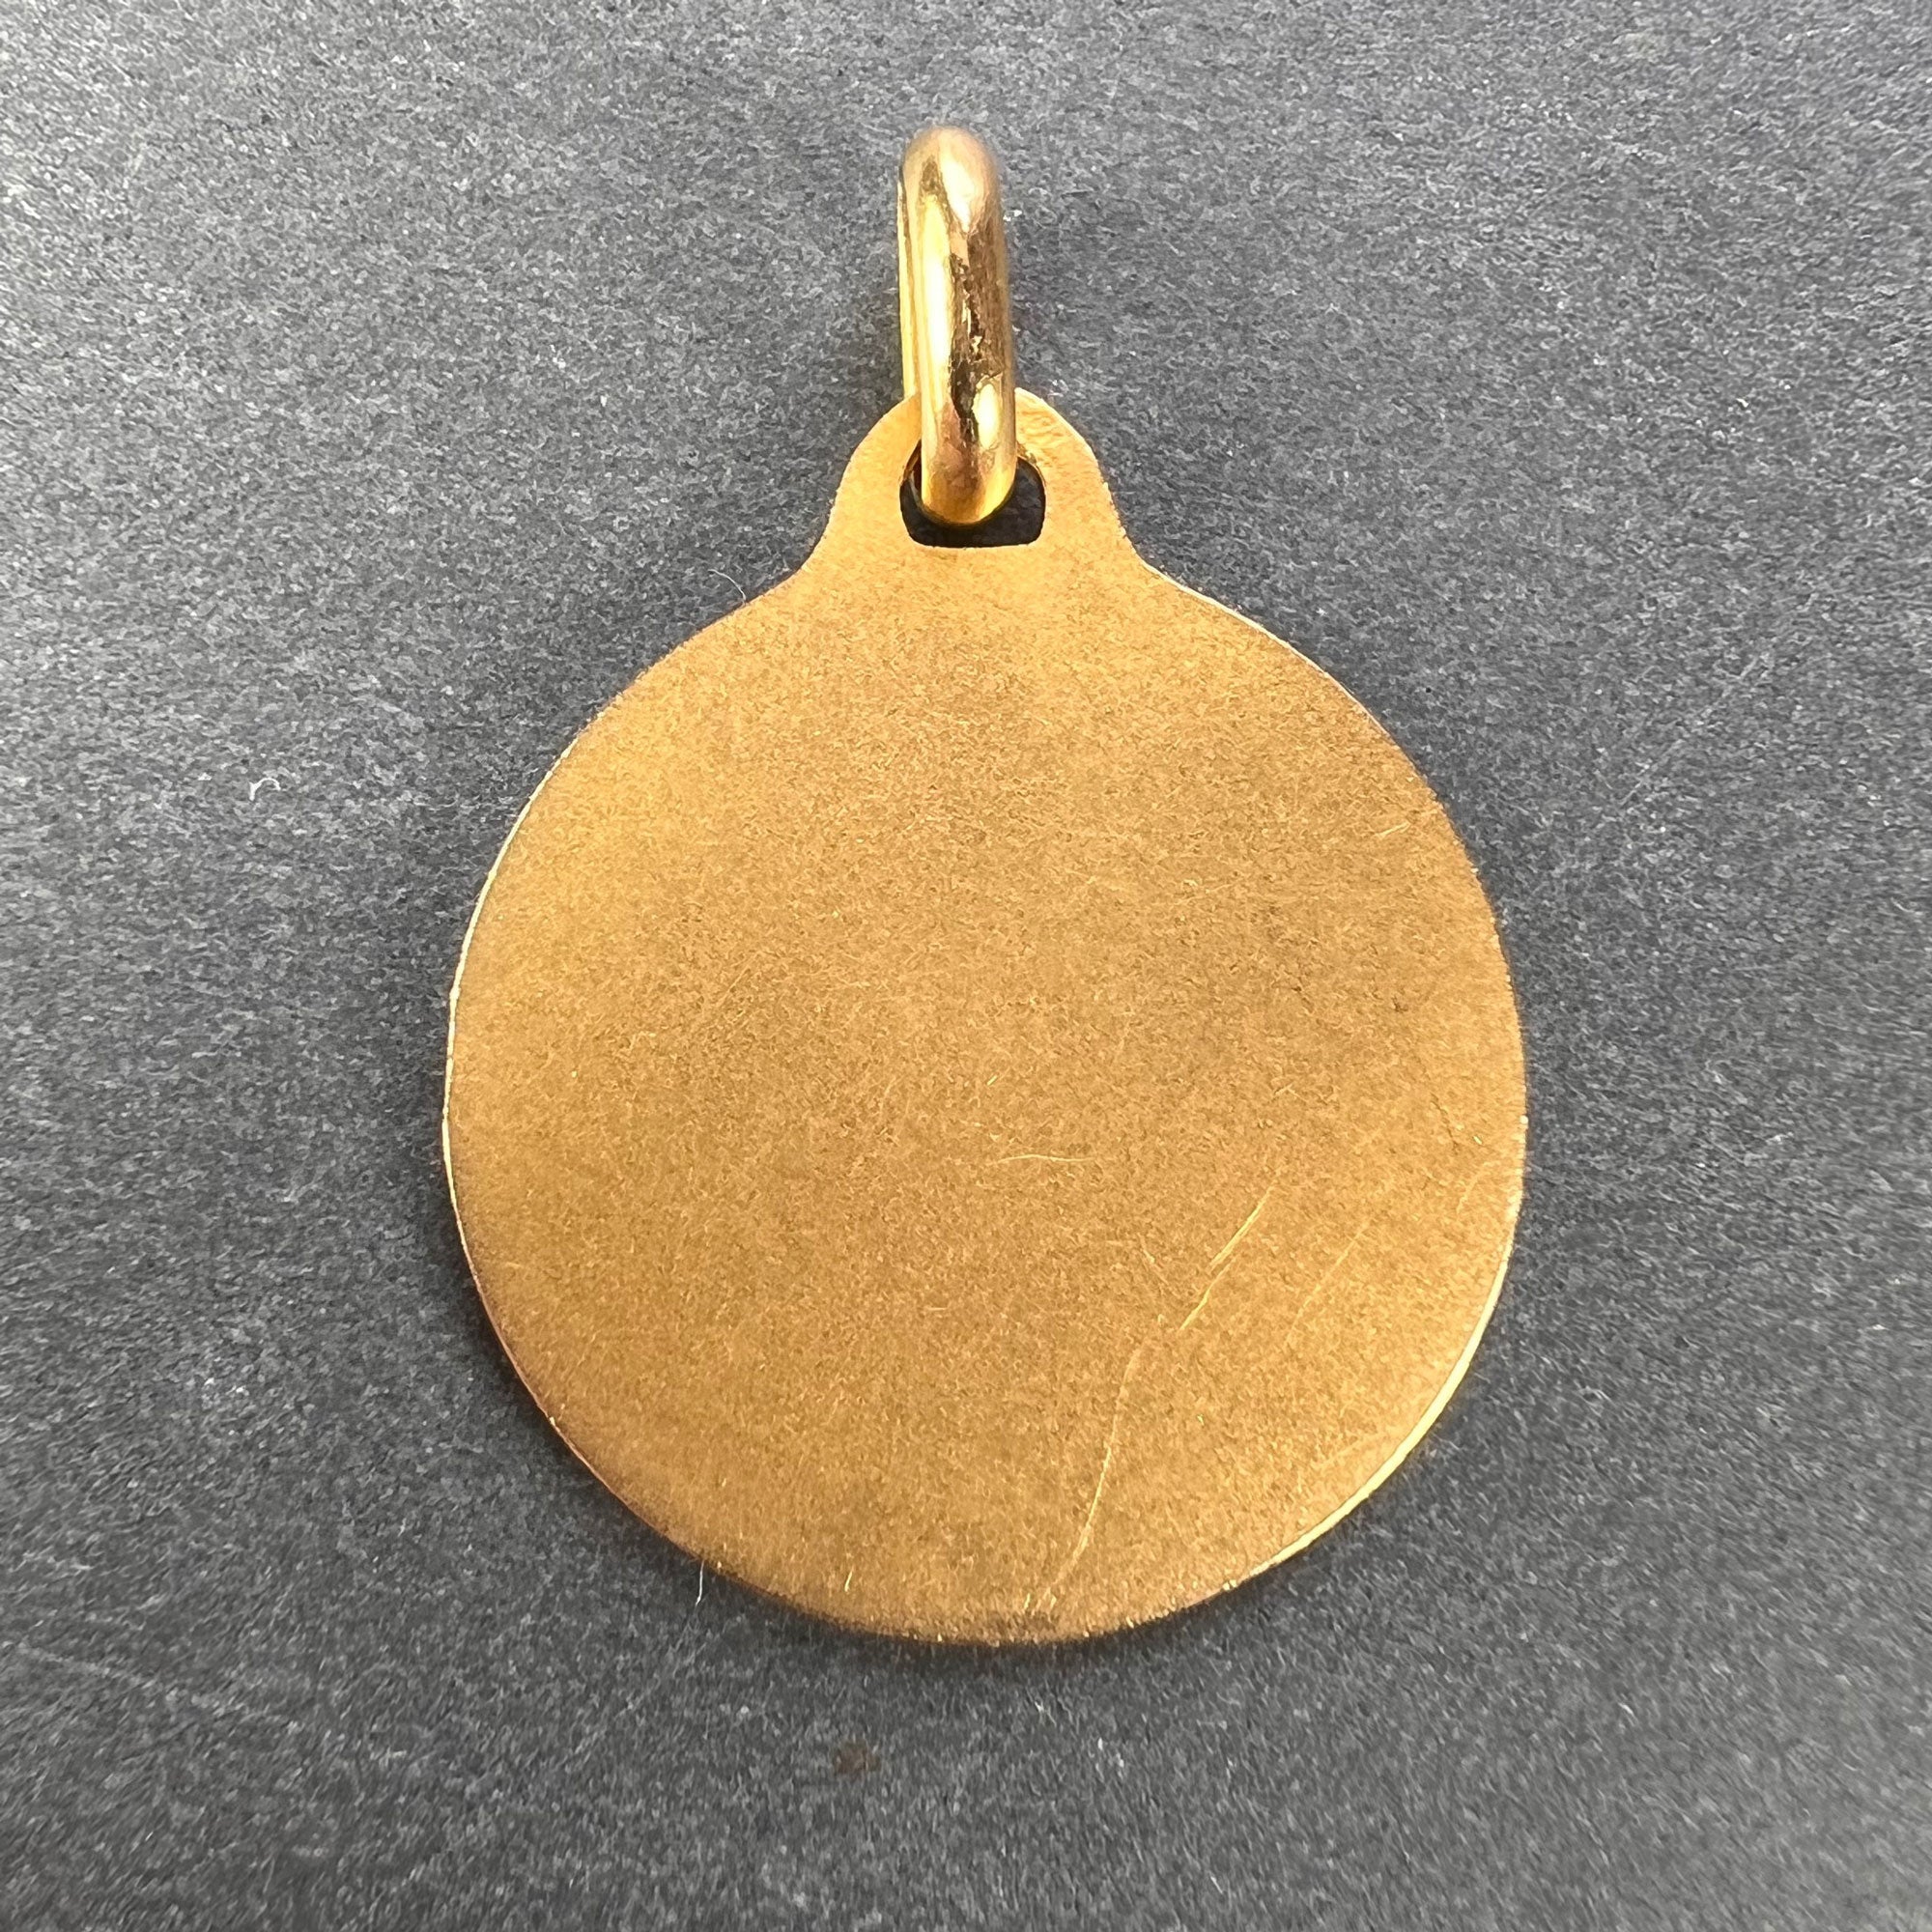 Louis Vuitton French 18 Karat Tri-Color Gold Apple Charm Pendant